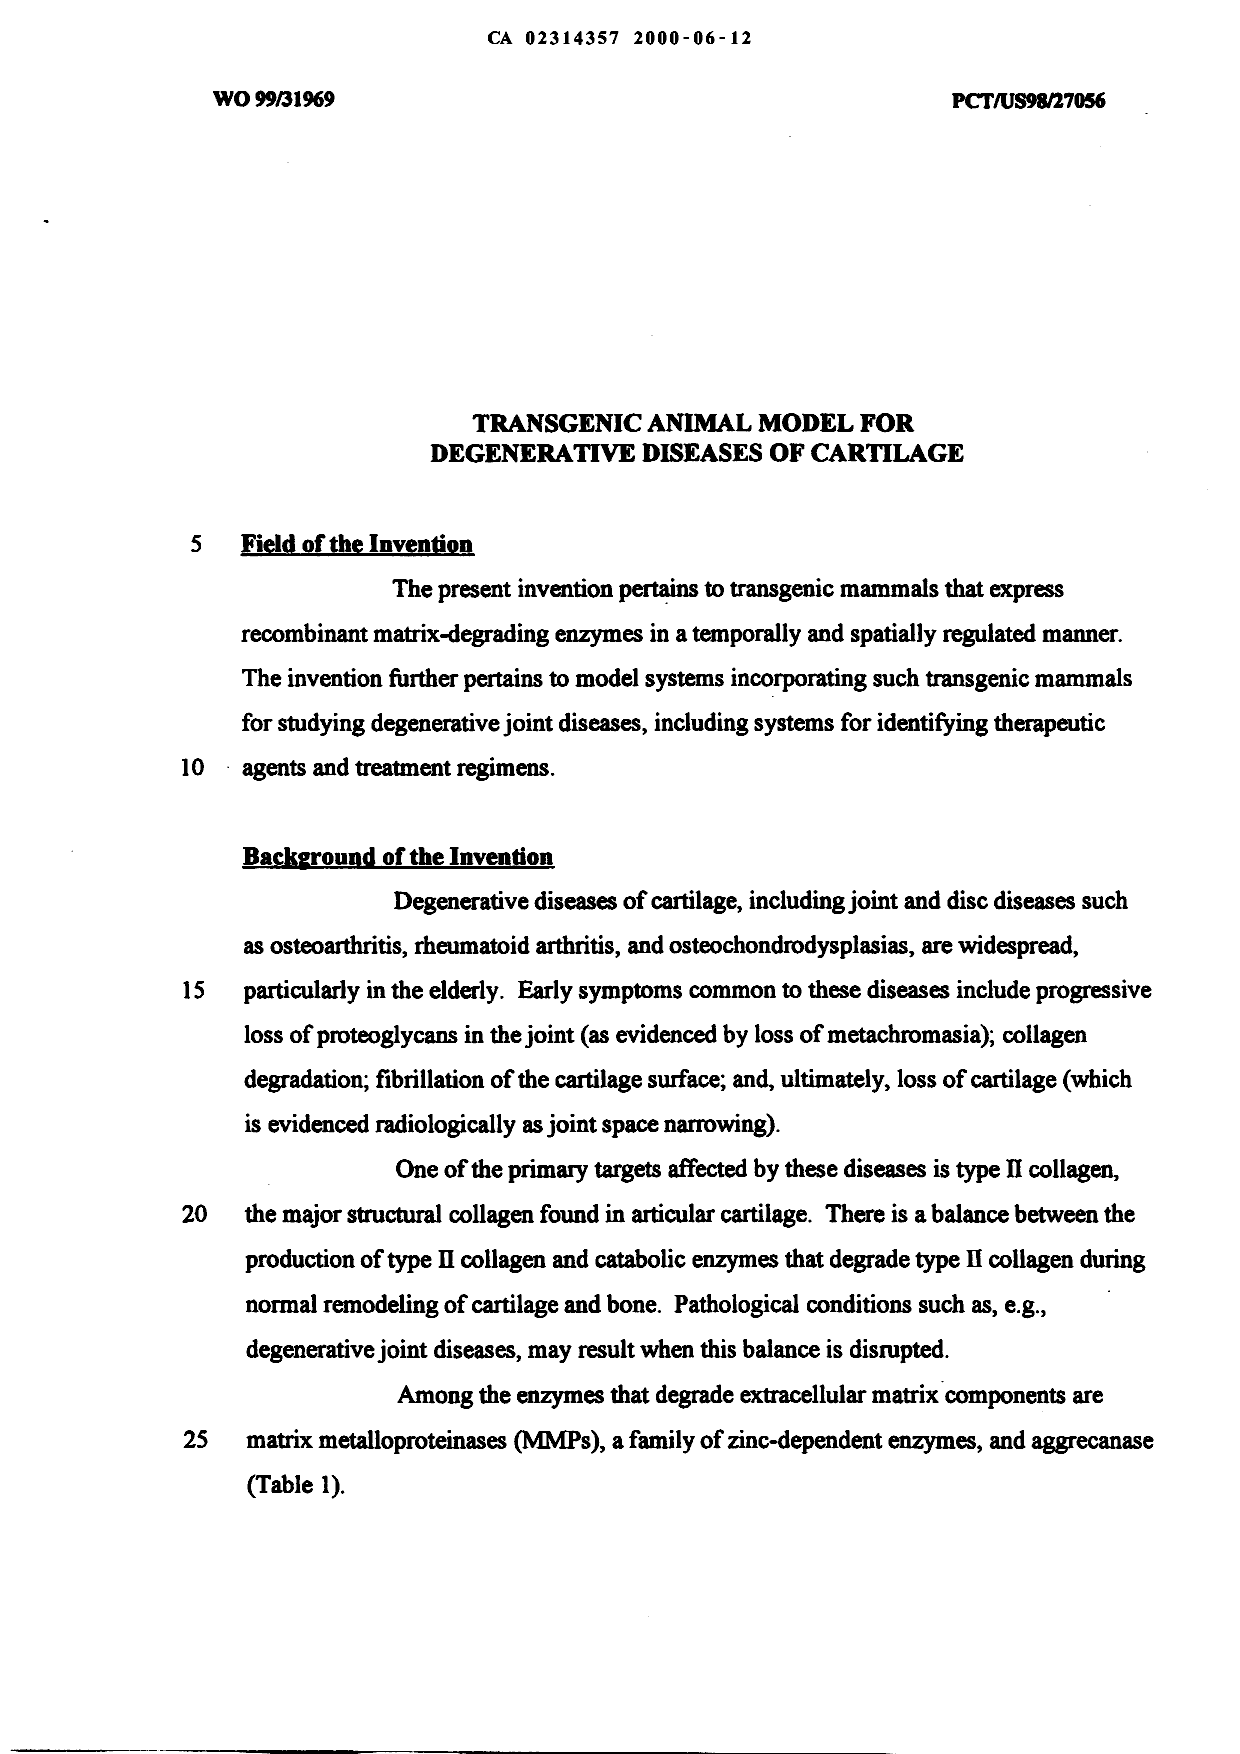 Canadian Patent Document 2314357. Description 20001012. Image 1 of 52